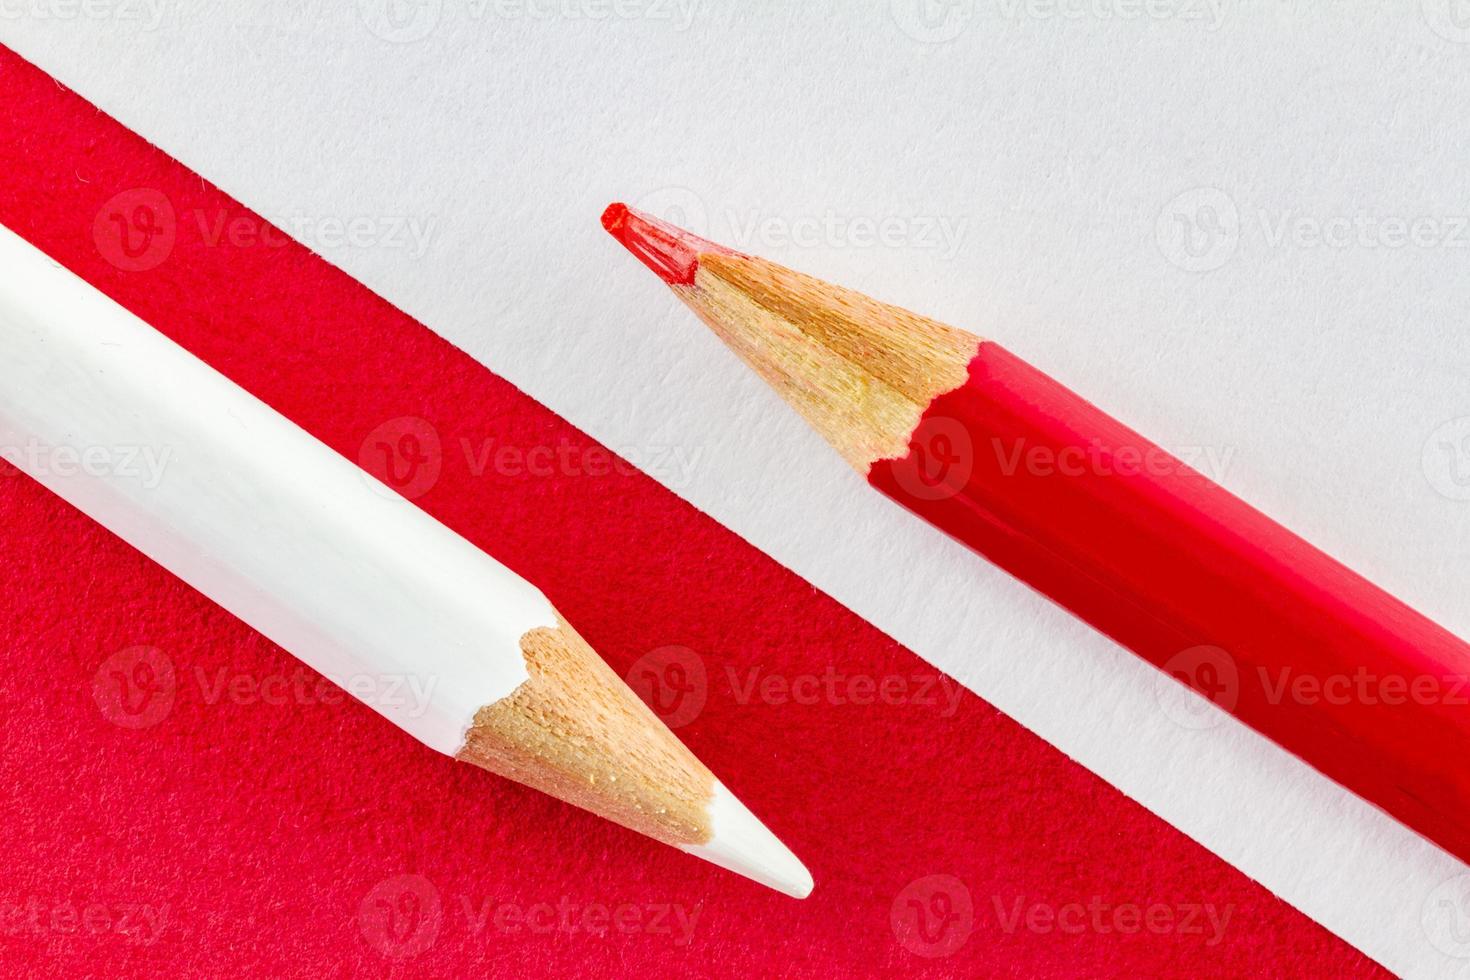 kleurpotloden op rood en wit kleurendocument diagonaal gerangschikt foto